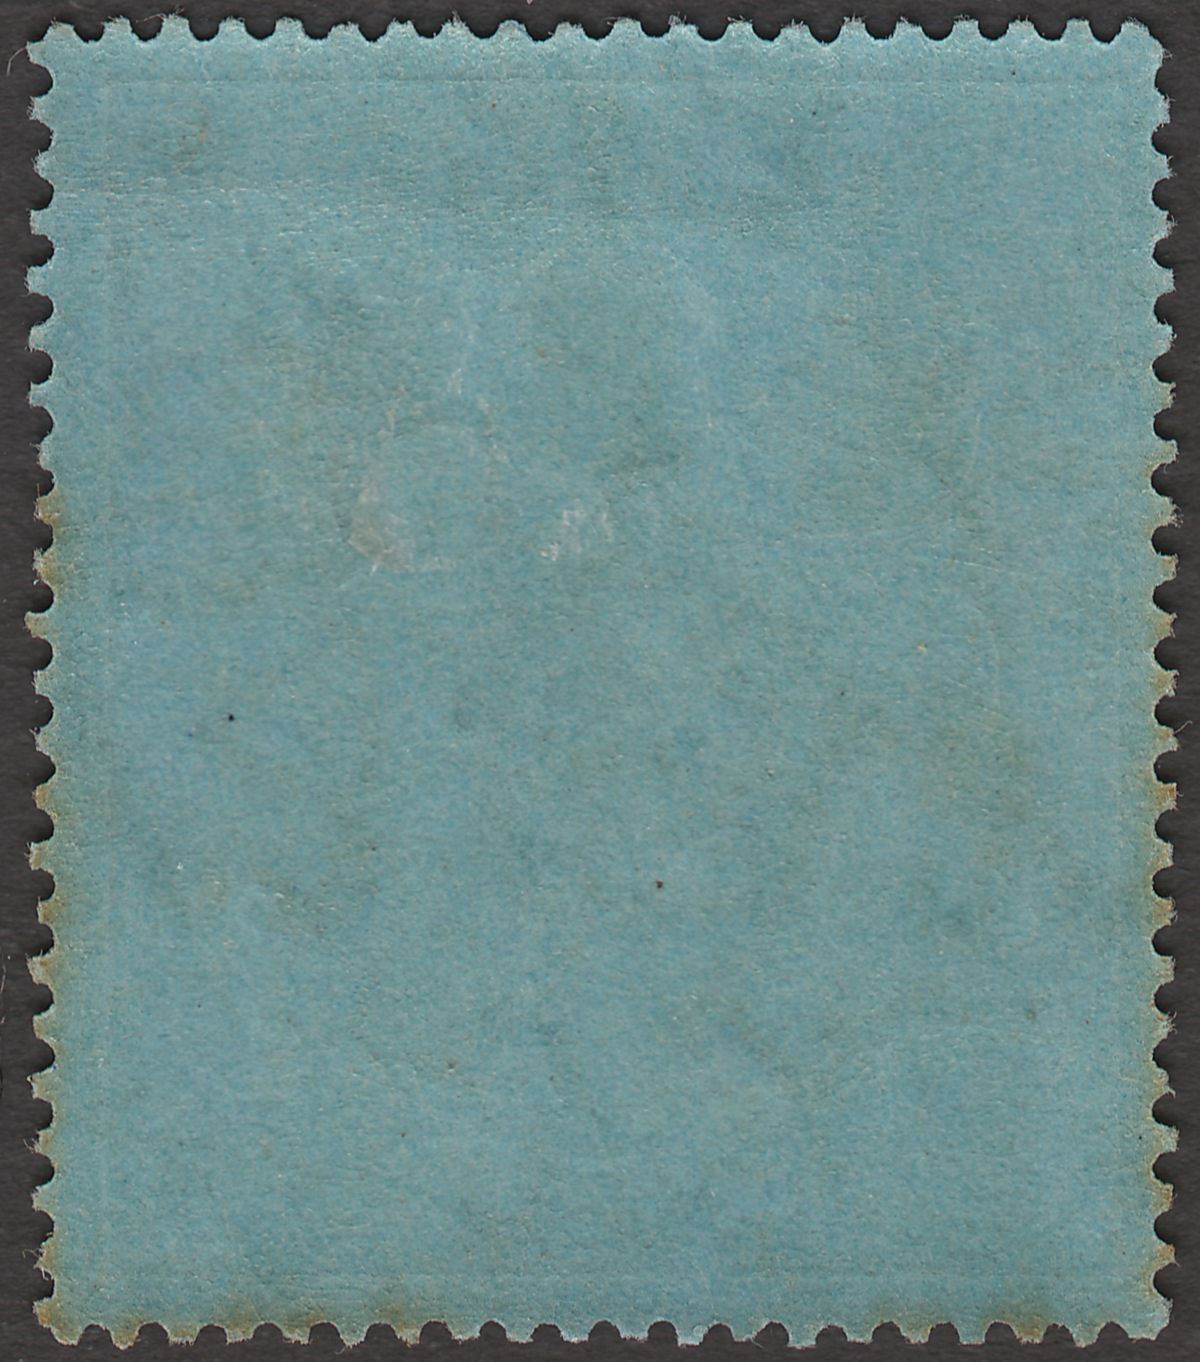 Malta 1922 KGV 2sh Purple and Blue on Blue wmk Script Mint SG103 cat £70